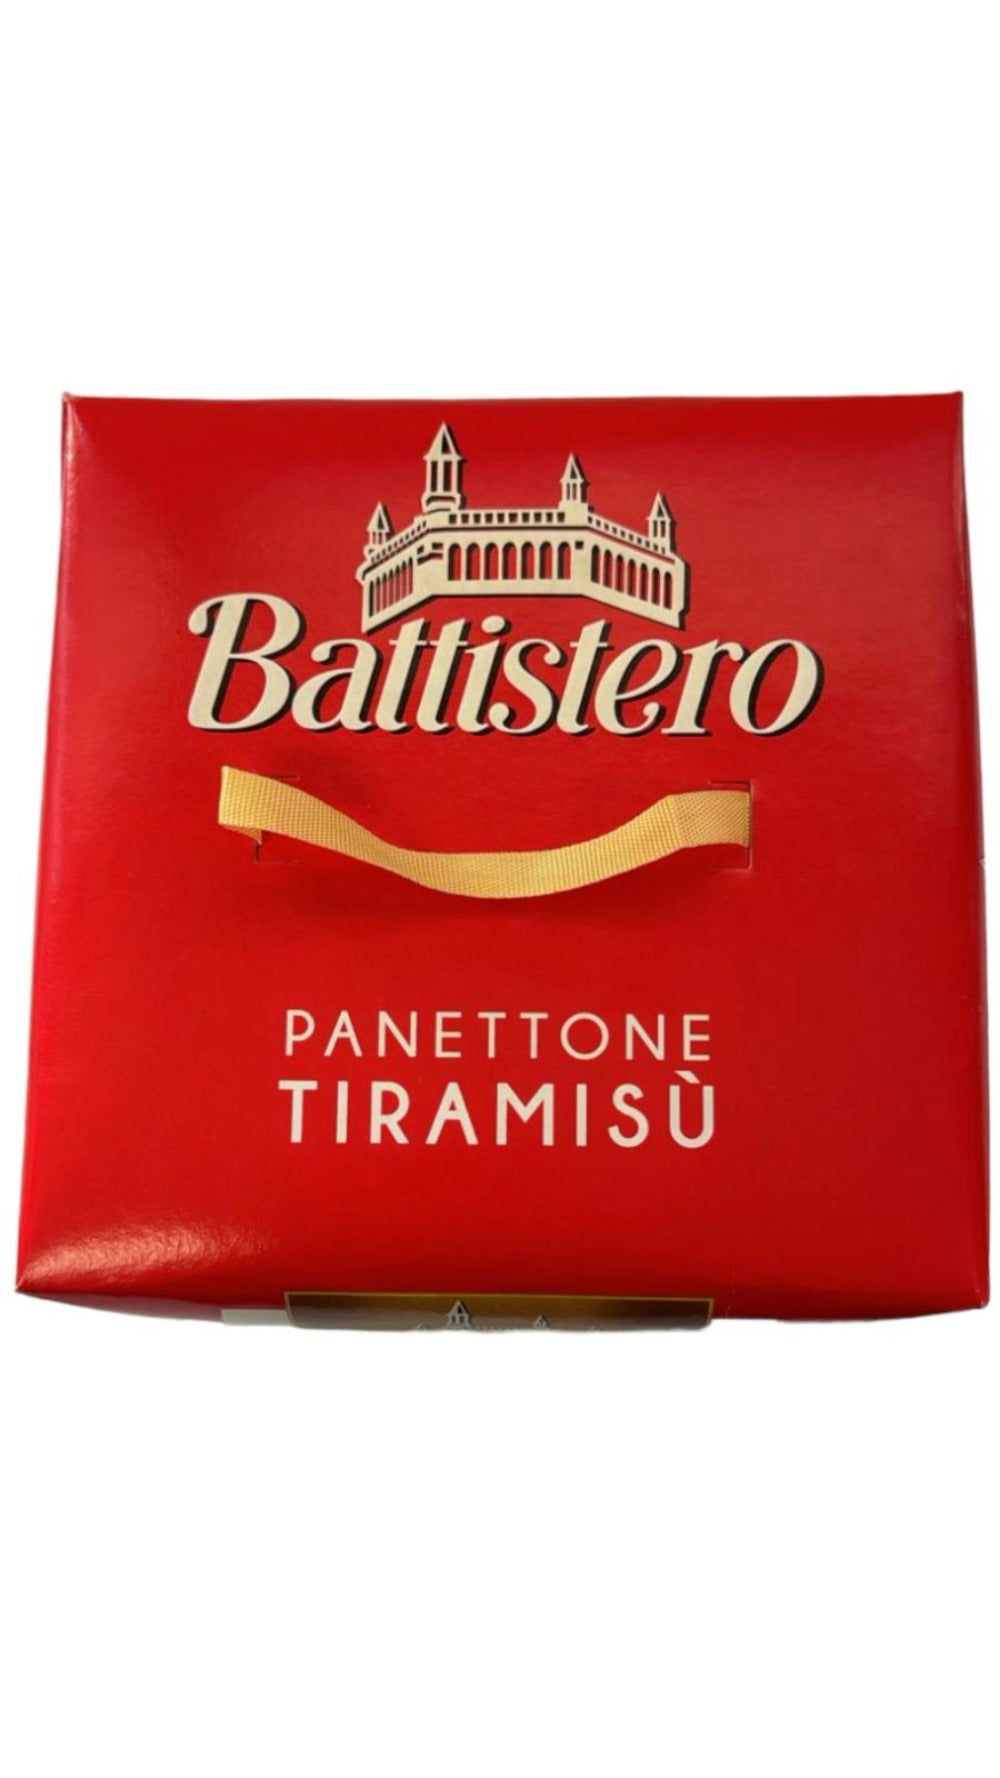 Battisero Tiramisu Panettone Italian Cake 750g